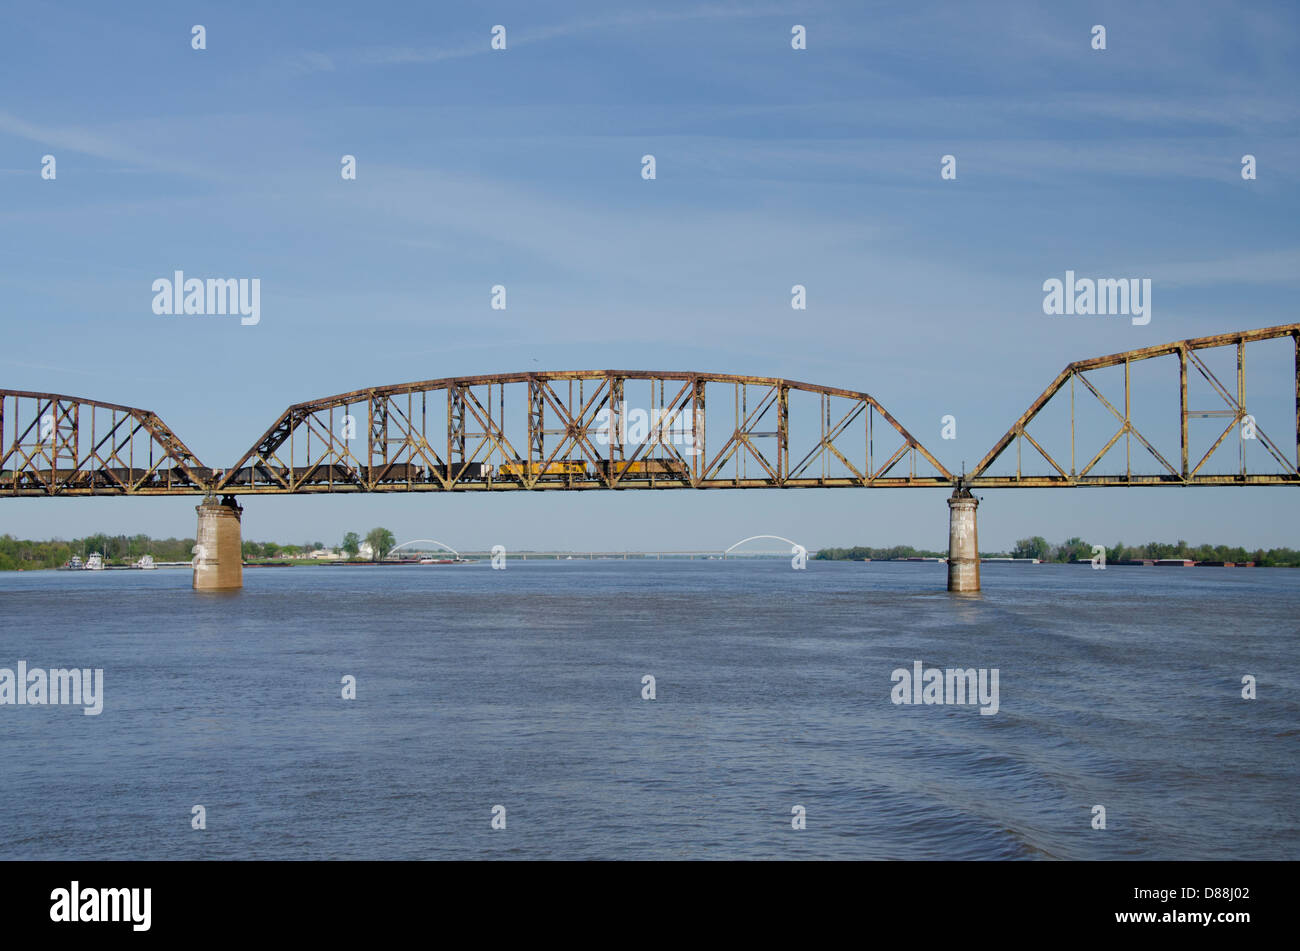 L'Ohio / Kentucky, l'Ohio River, près de la jonction de la rivière Mississippi. Freight train roulant sur pont sur la rivière Ohio. Banque D'Images